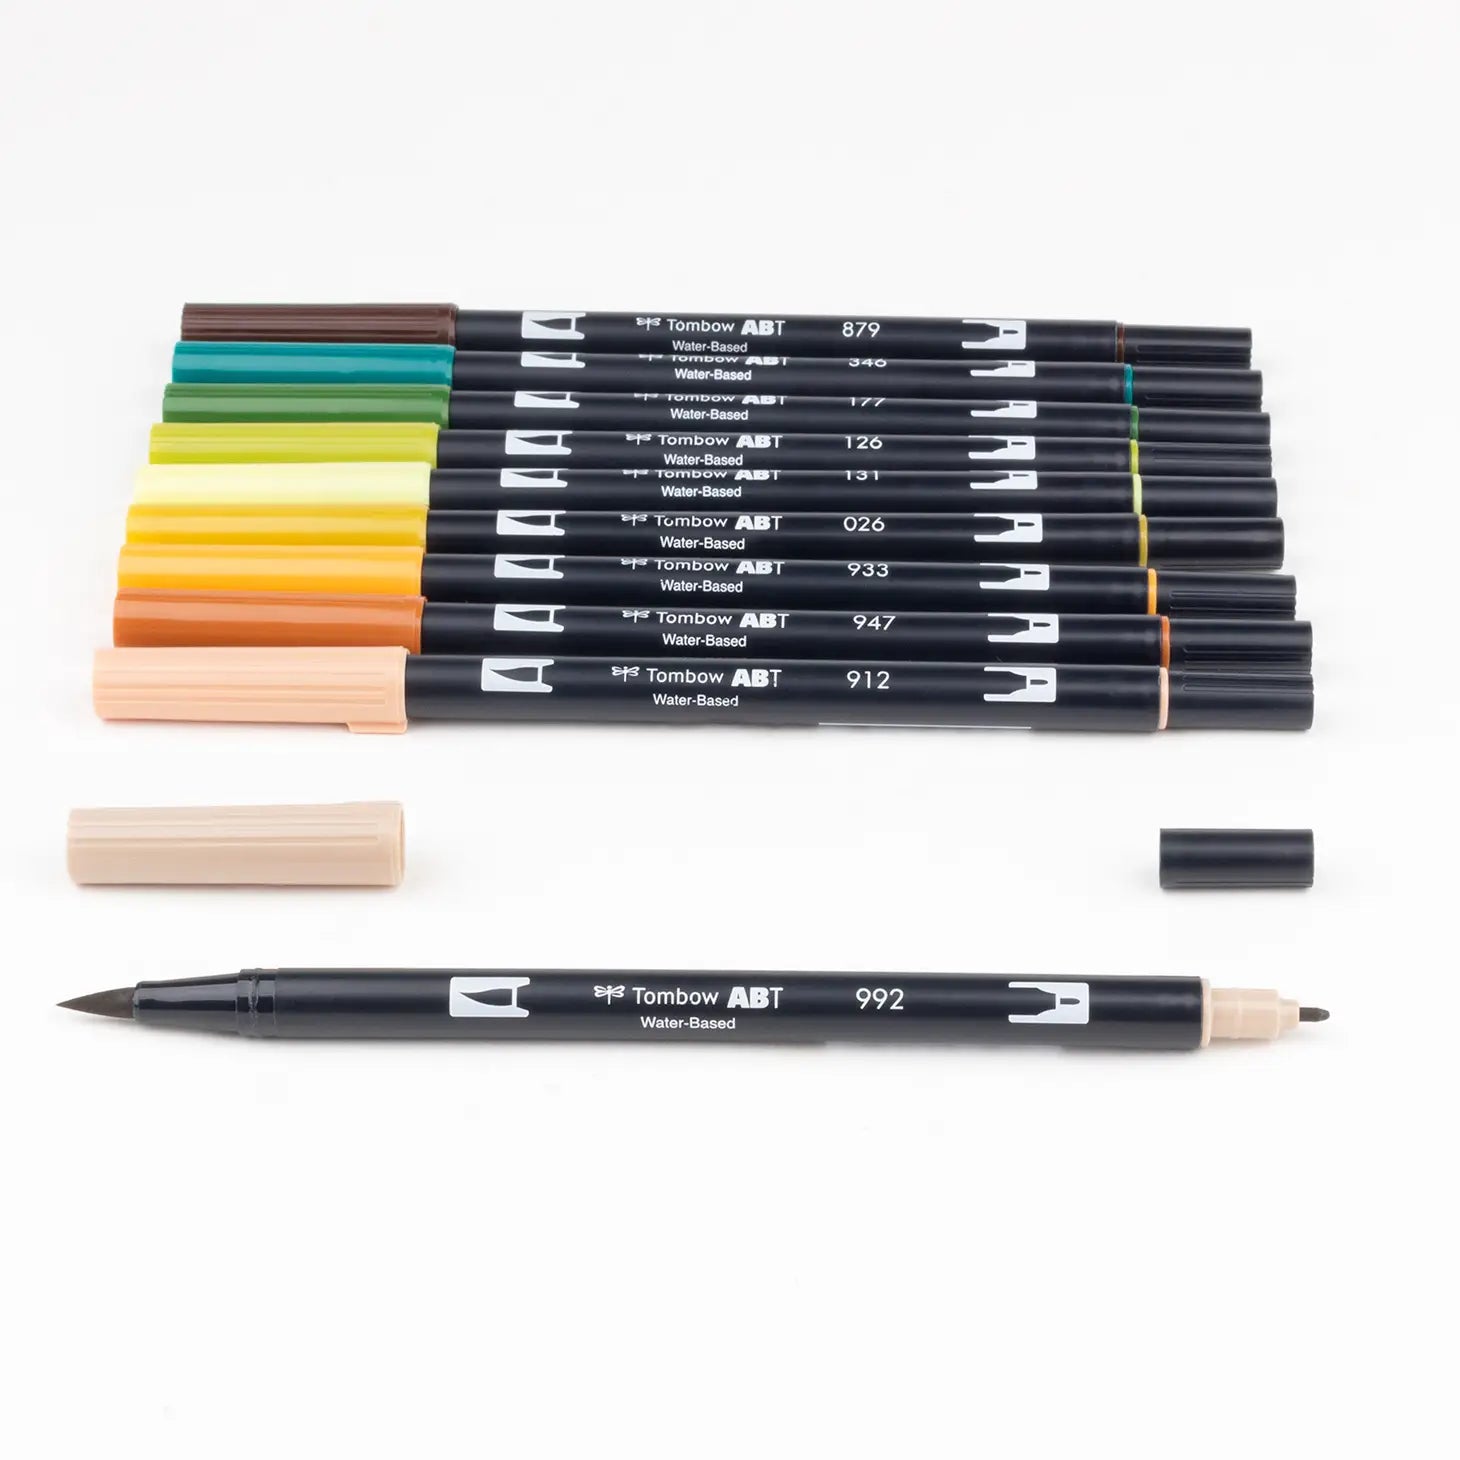 Colorful Marker Pens: Art Marker Pens & Colorful Marker Bundle